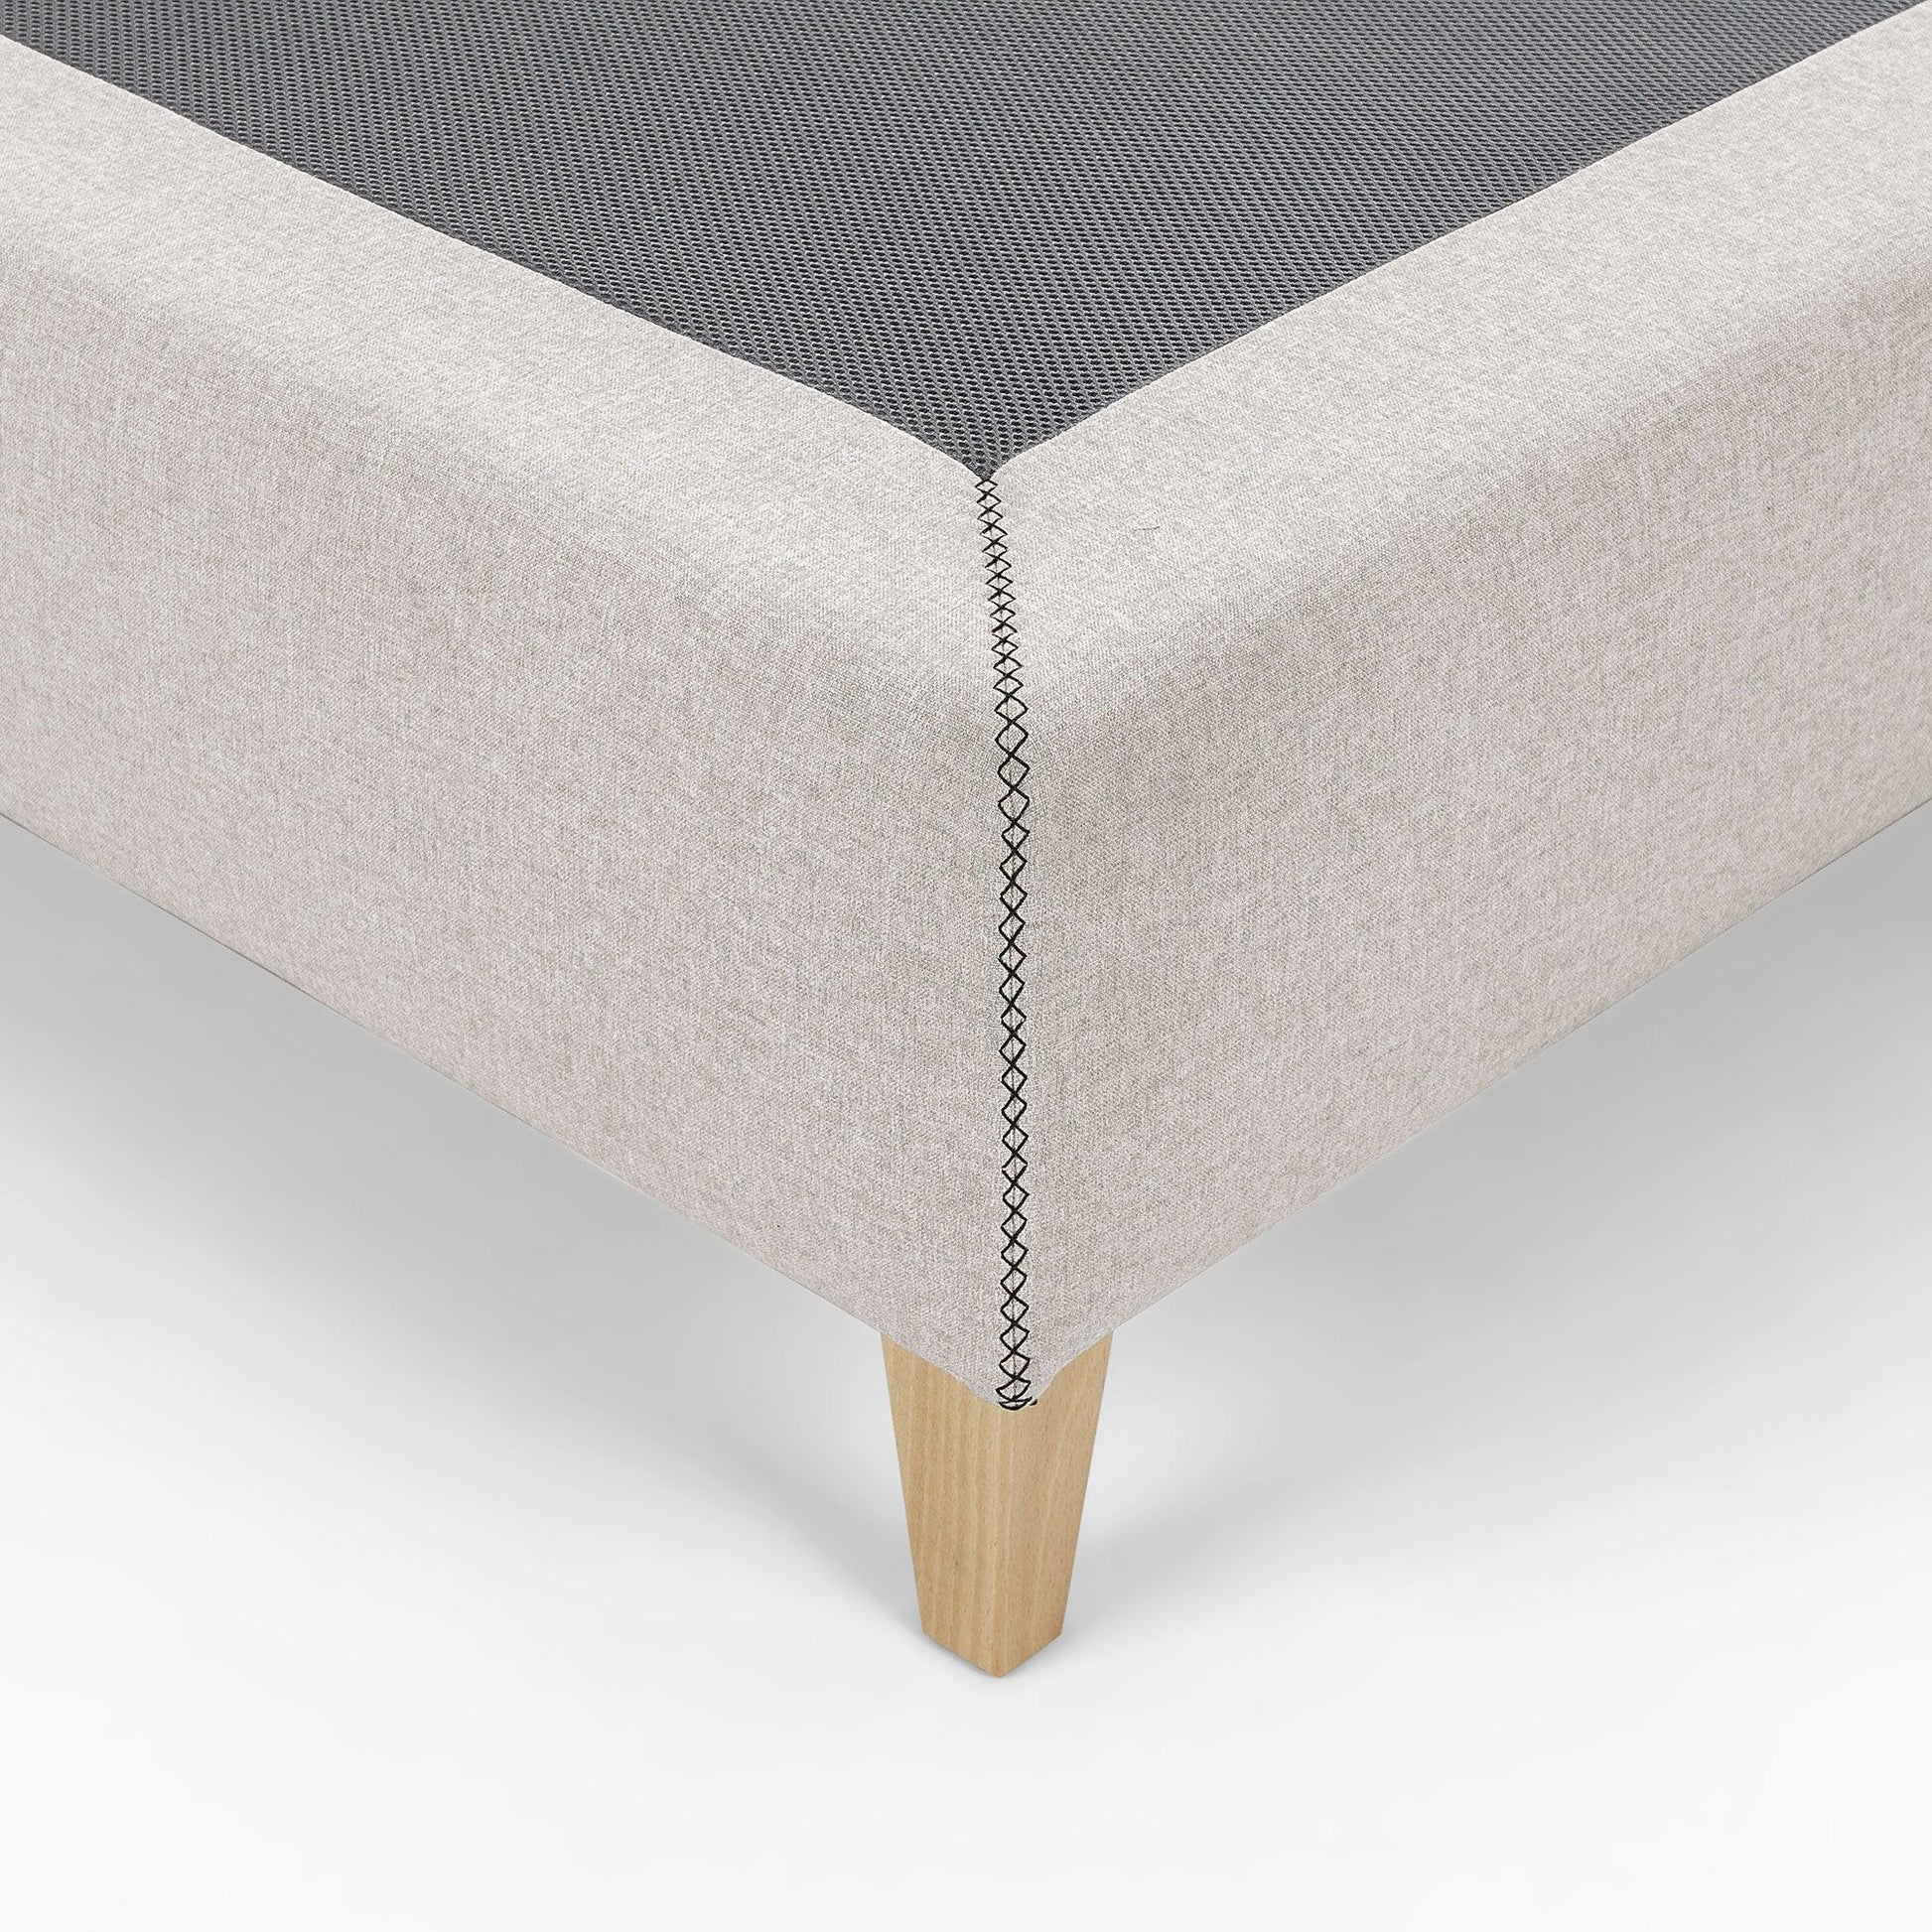 Fabric Single Bed Base